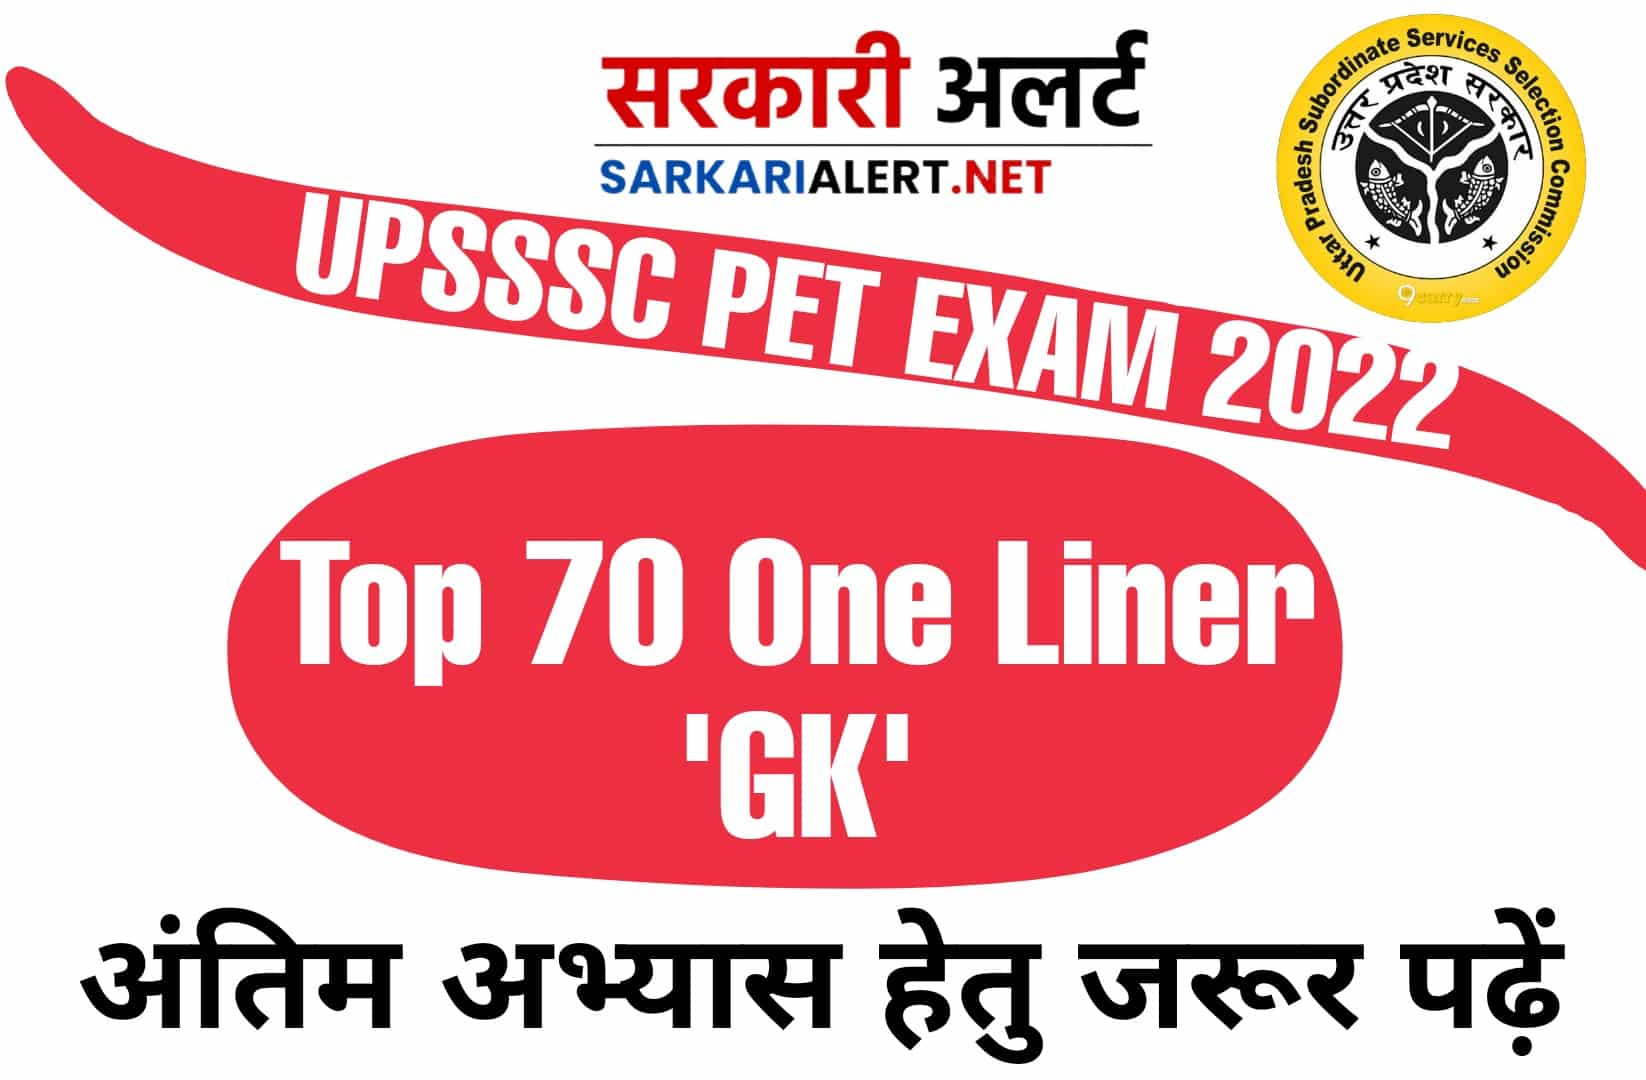 UPSSC PET Exam 2022 | GK के टॉप 70 प्रश्न, अंतिम अभ्यास हेतु जरूर अध्ययन करें